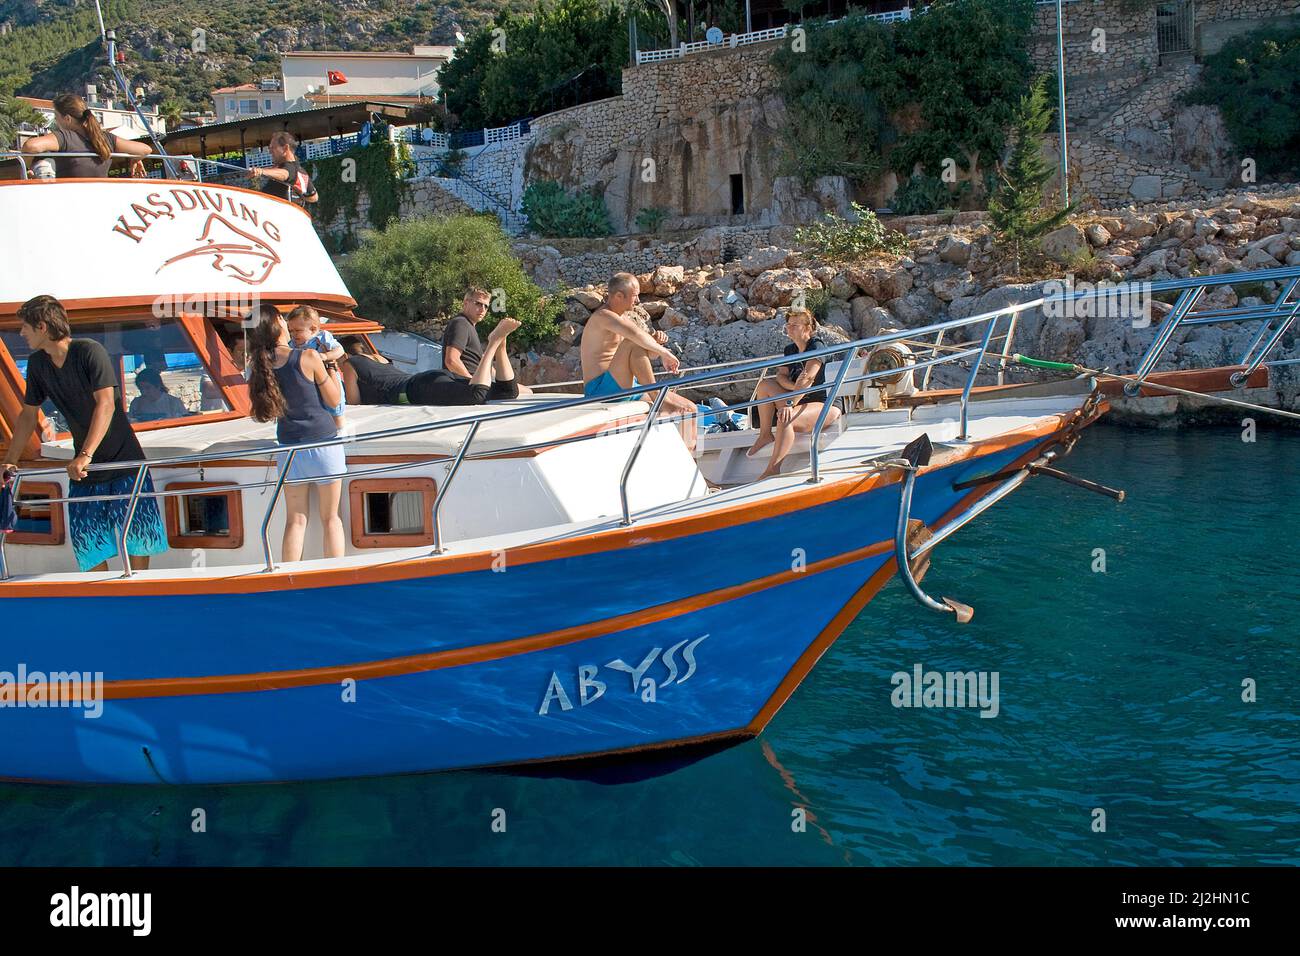 Prendere il sole sul ponte anteriore, barca subacquea di Kas diving, Kas, Lykia, Turchia Foto Stock